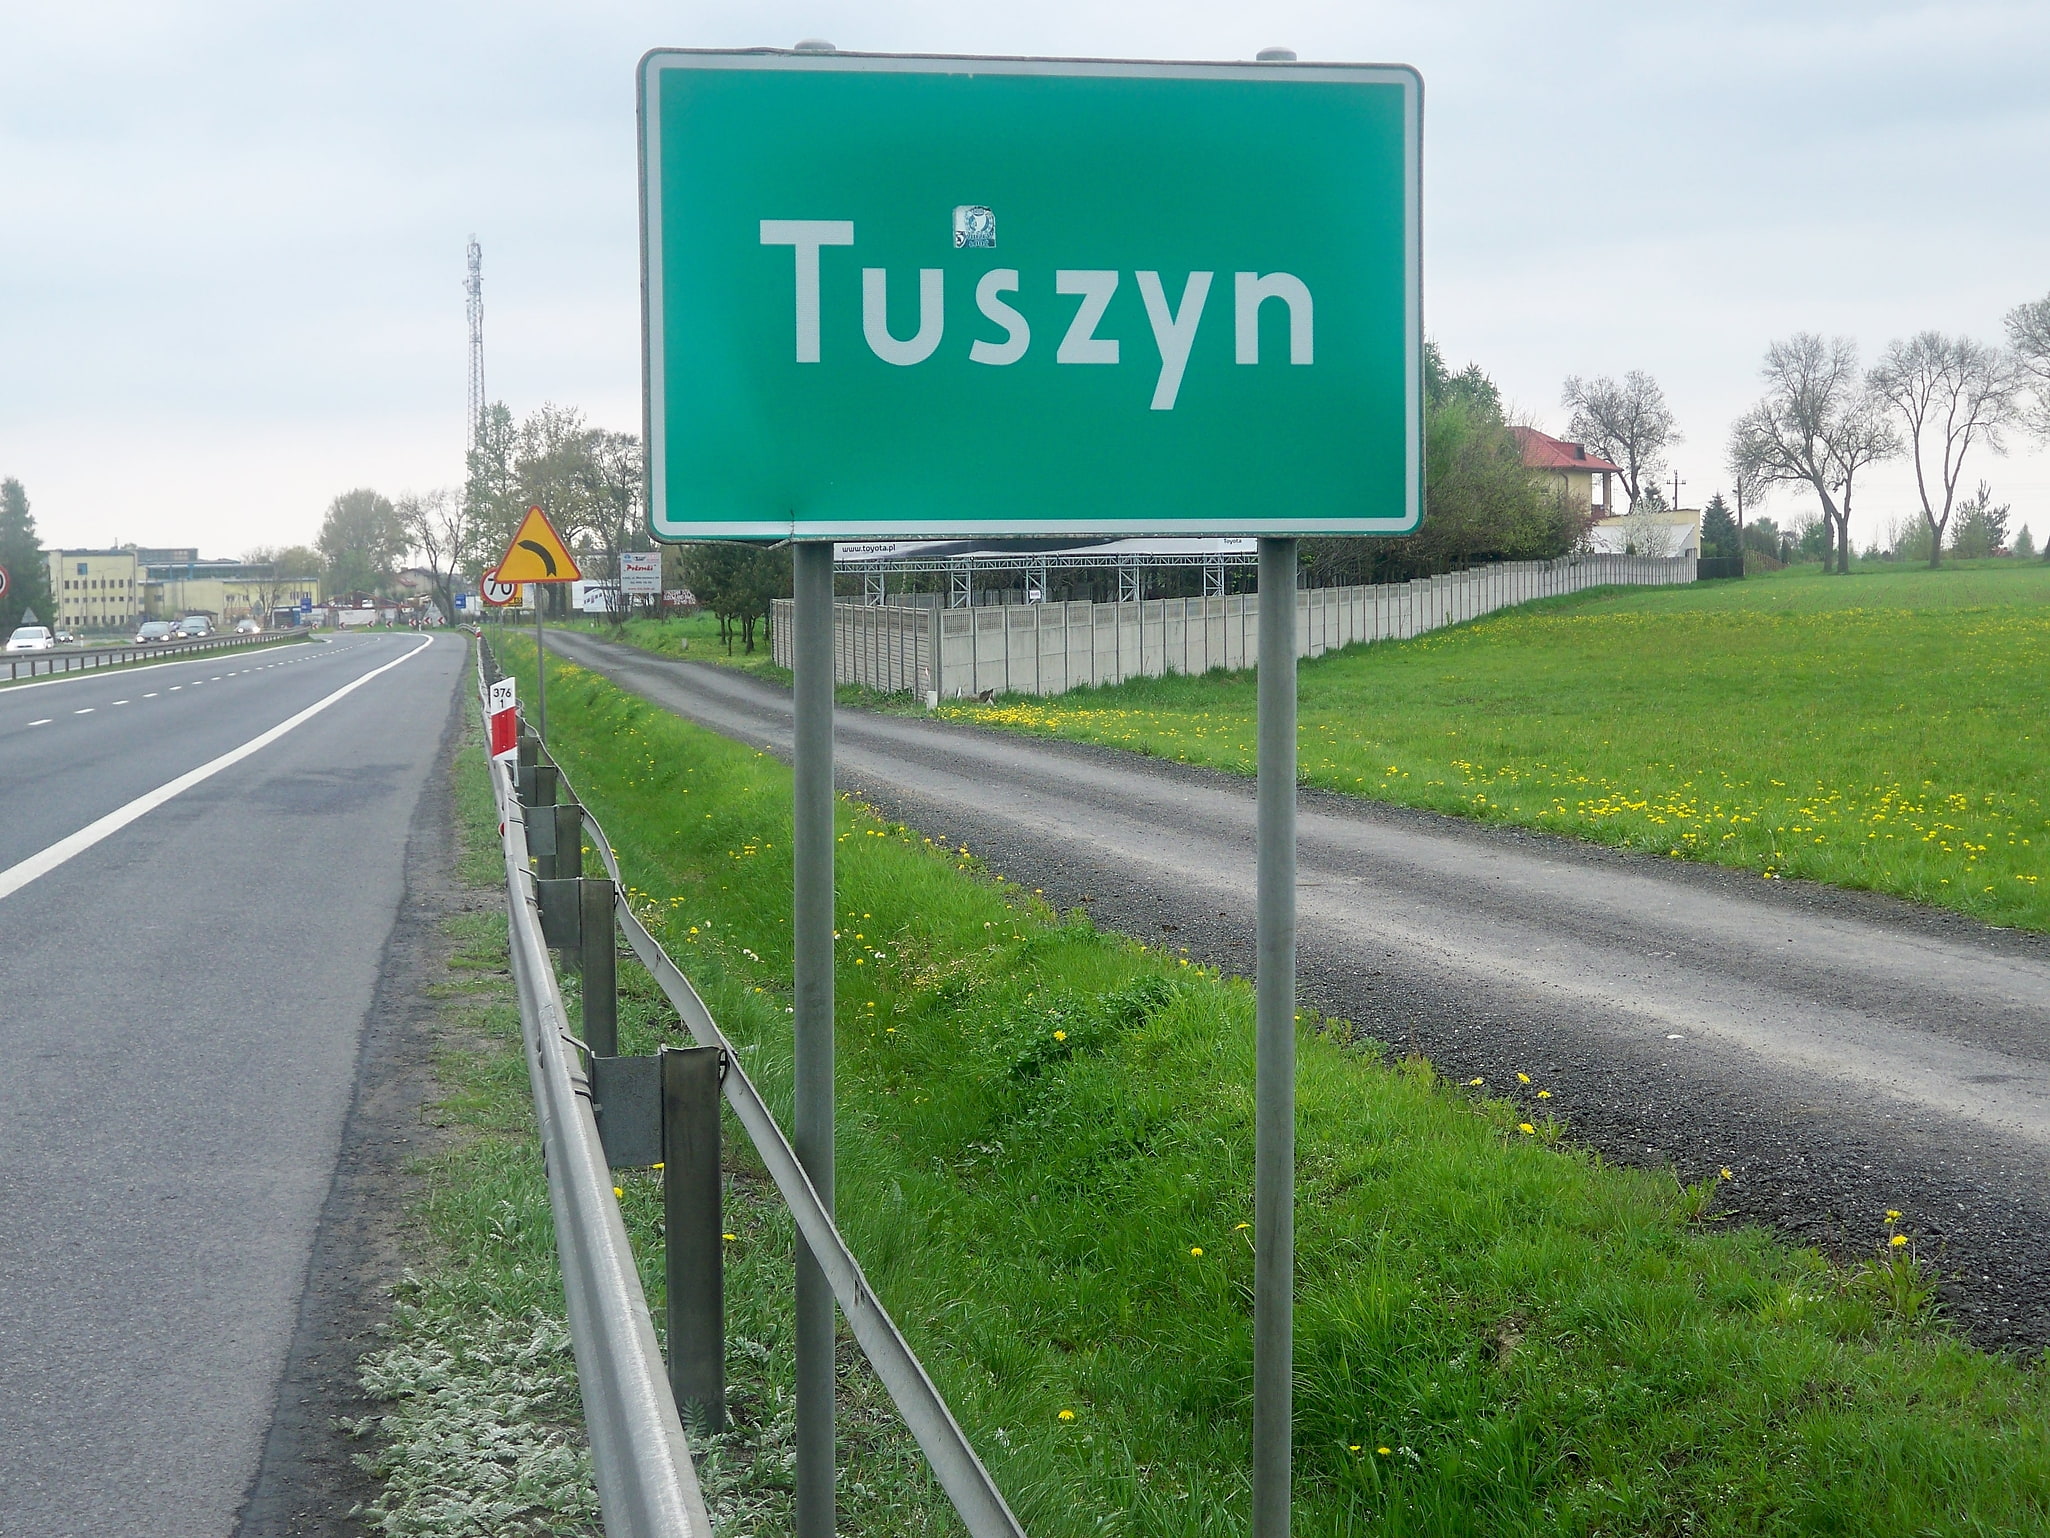 Tuszyn, Polen